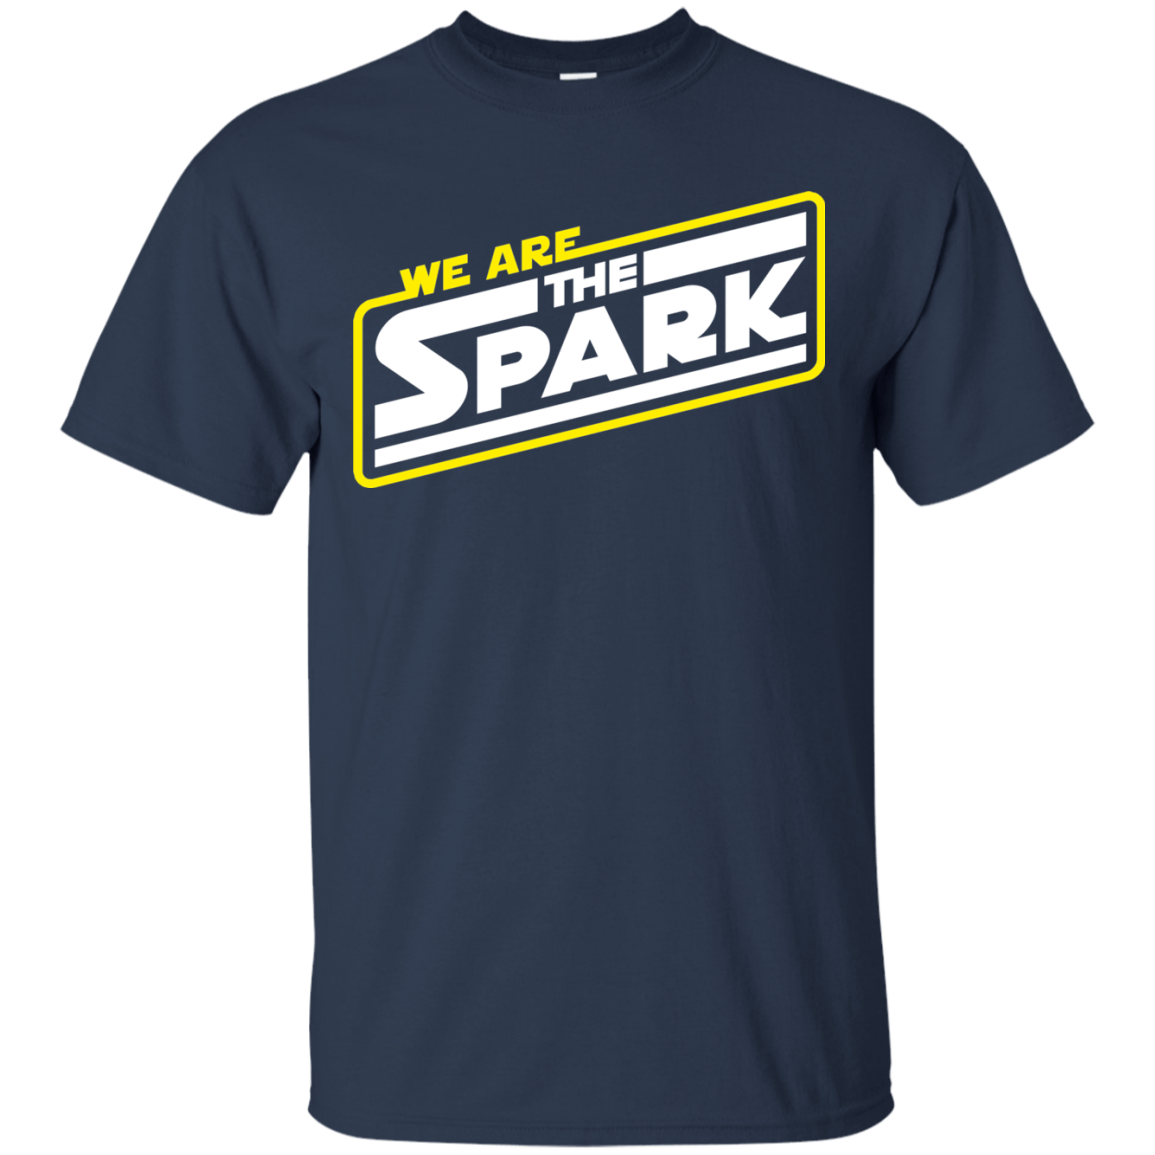 The Spark T-Shirt